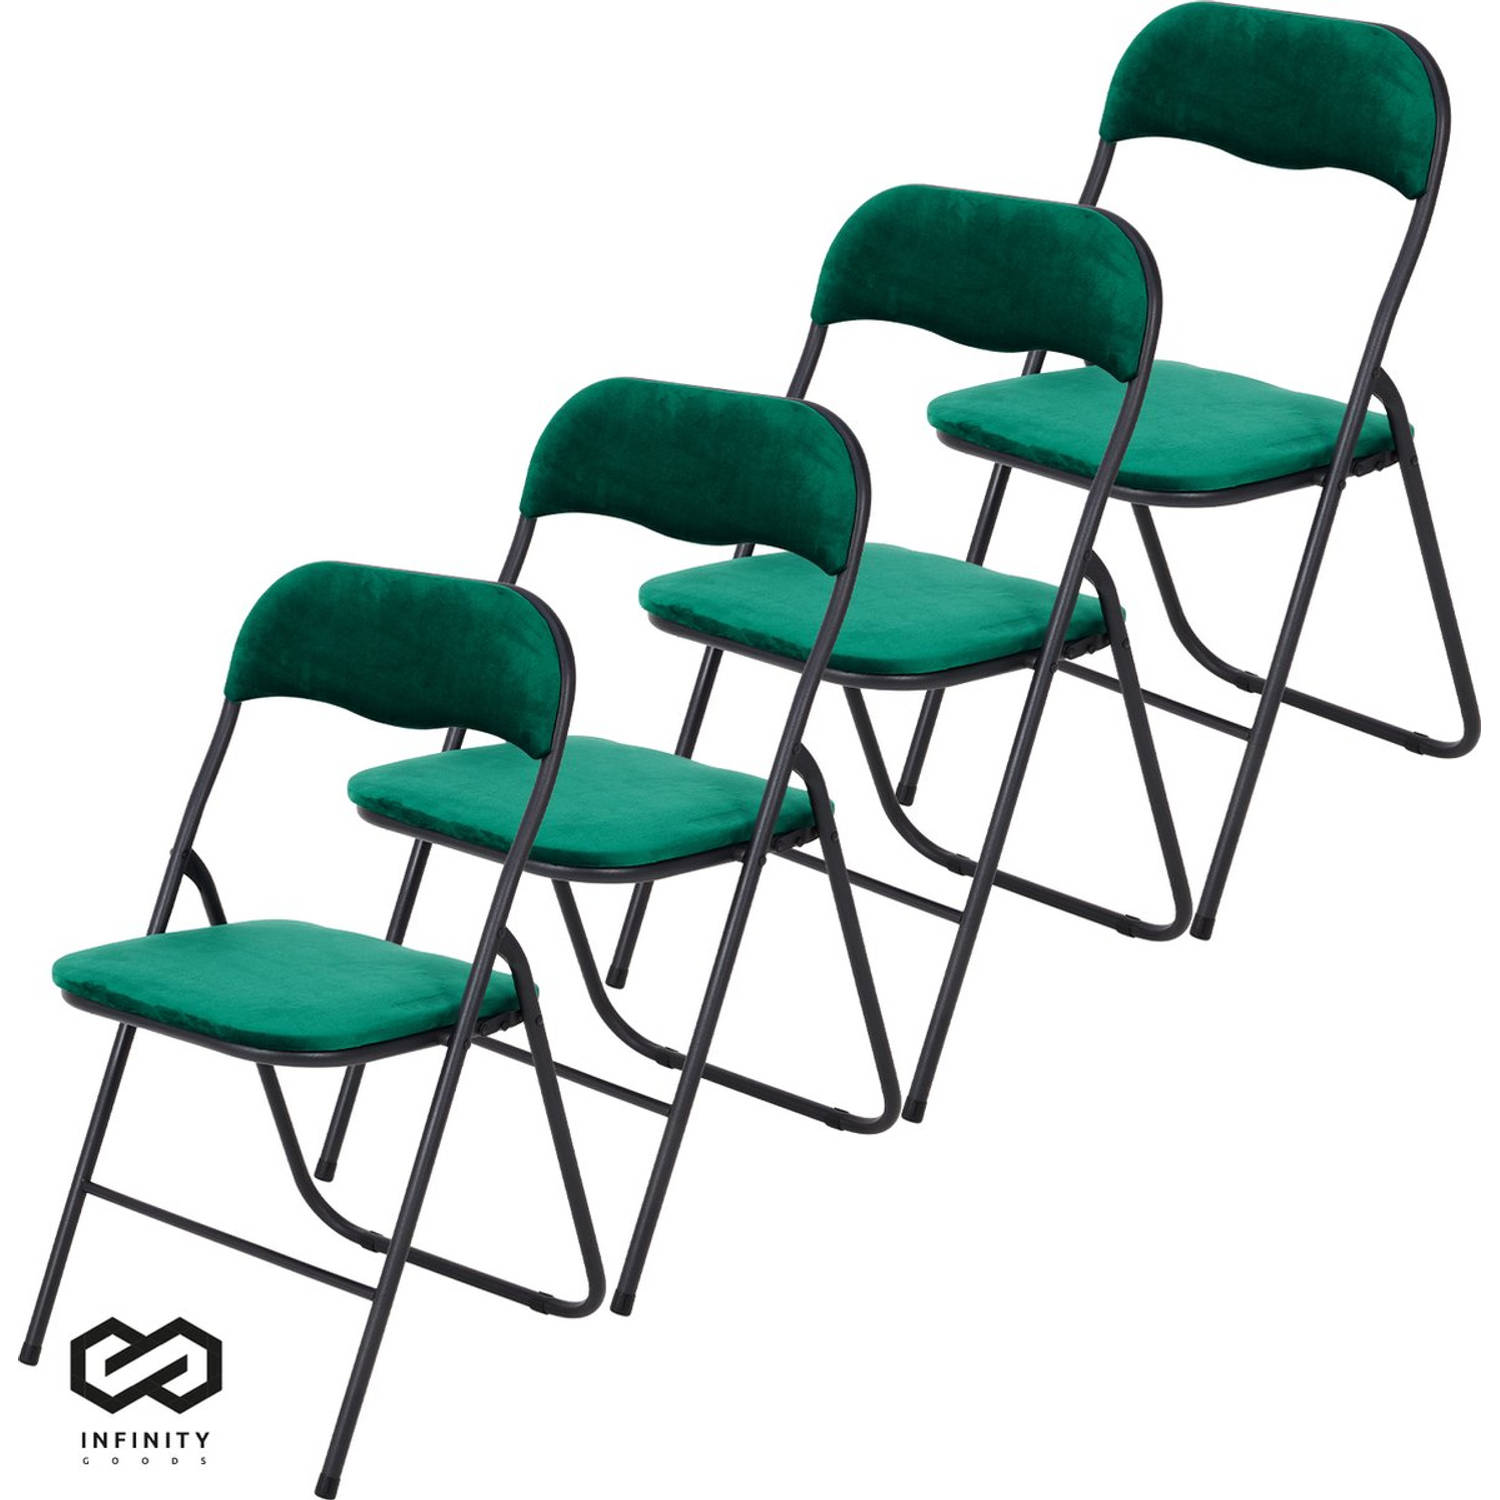 Infinity Goods Klapstoelen - Set van 4 - Vouwstoelen - Fluweel - Eettafelstoelen - Opklapbare Stoelen - 43 x 47 x 80 CM - Stoelen - Groen